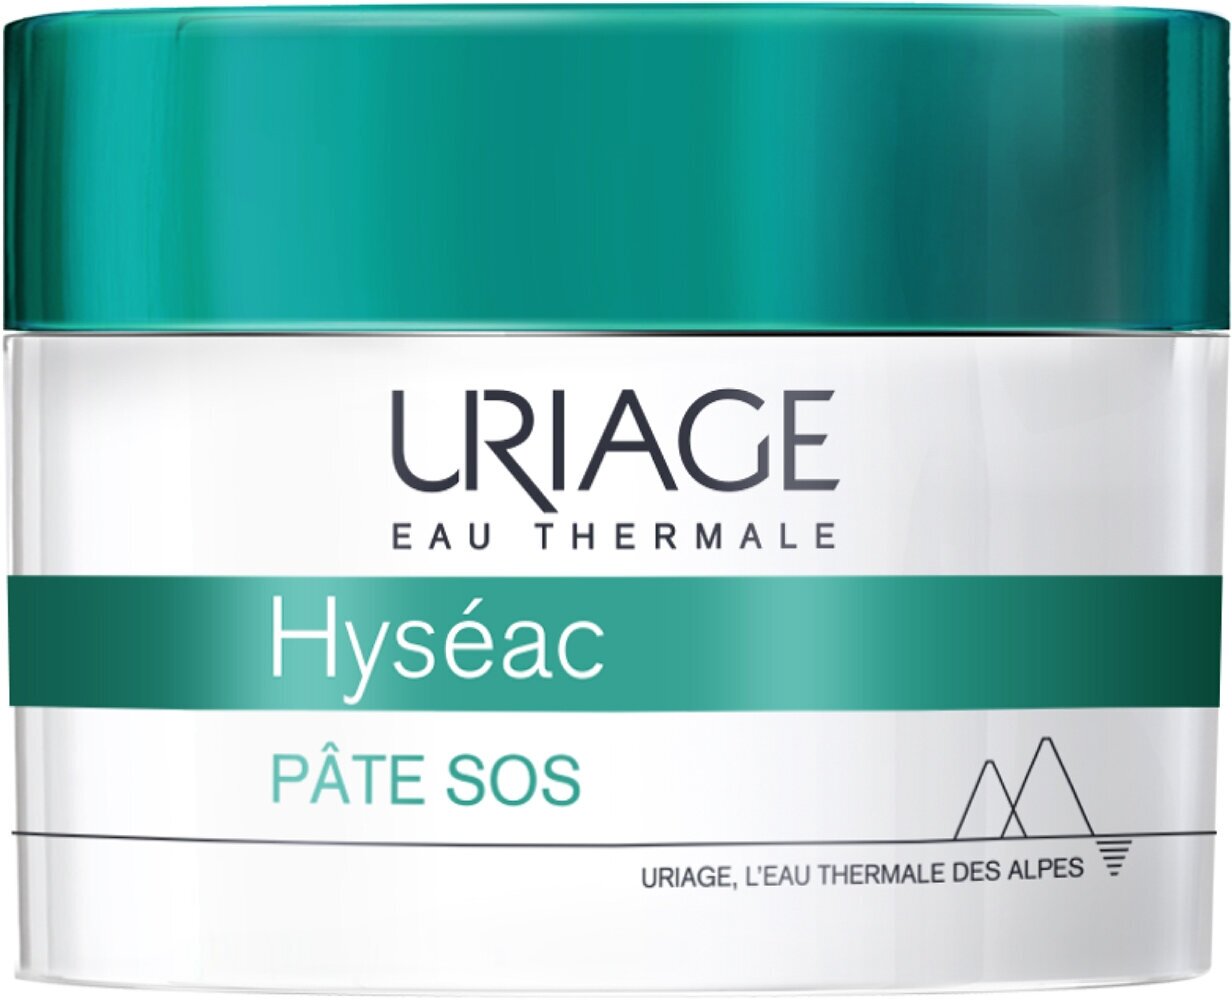 URIAGE Hyseac Паста для лица SOS для жирной и проблемной кожи, 15 г